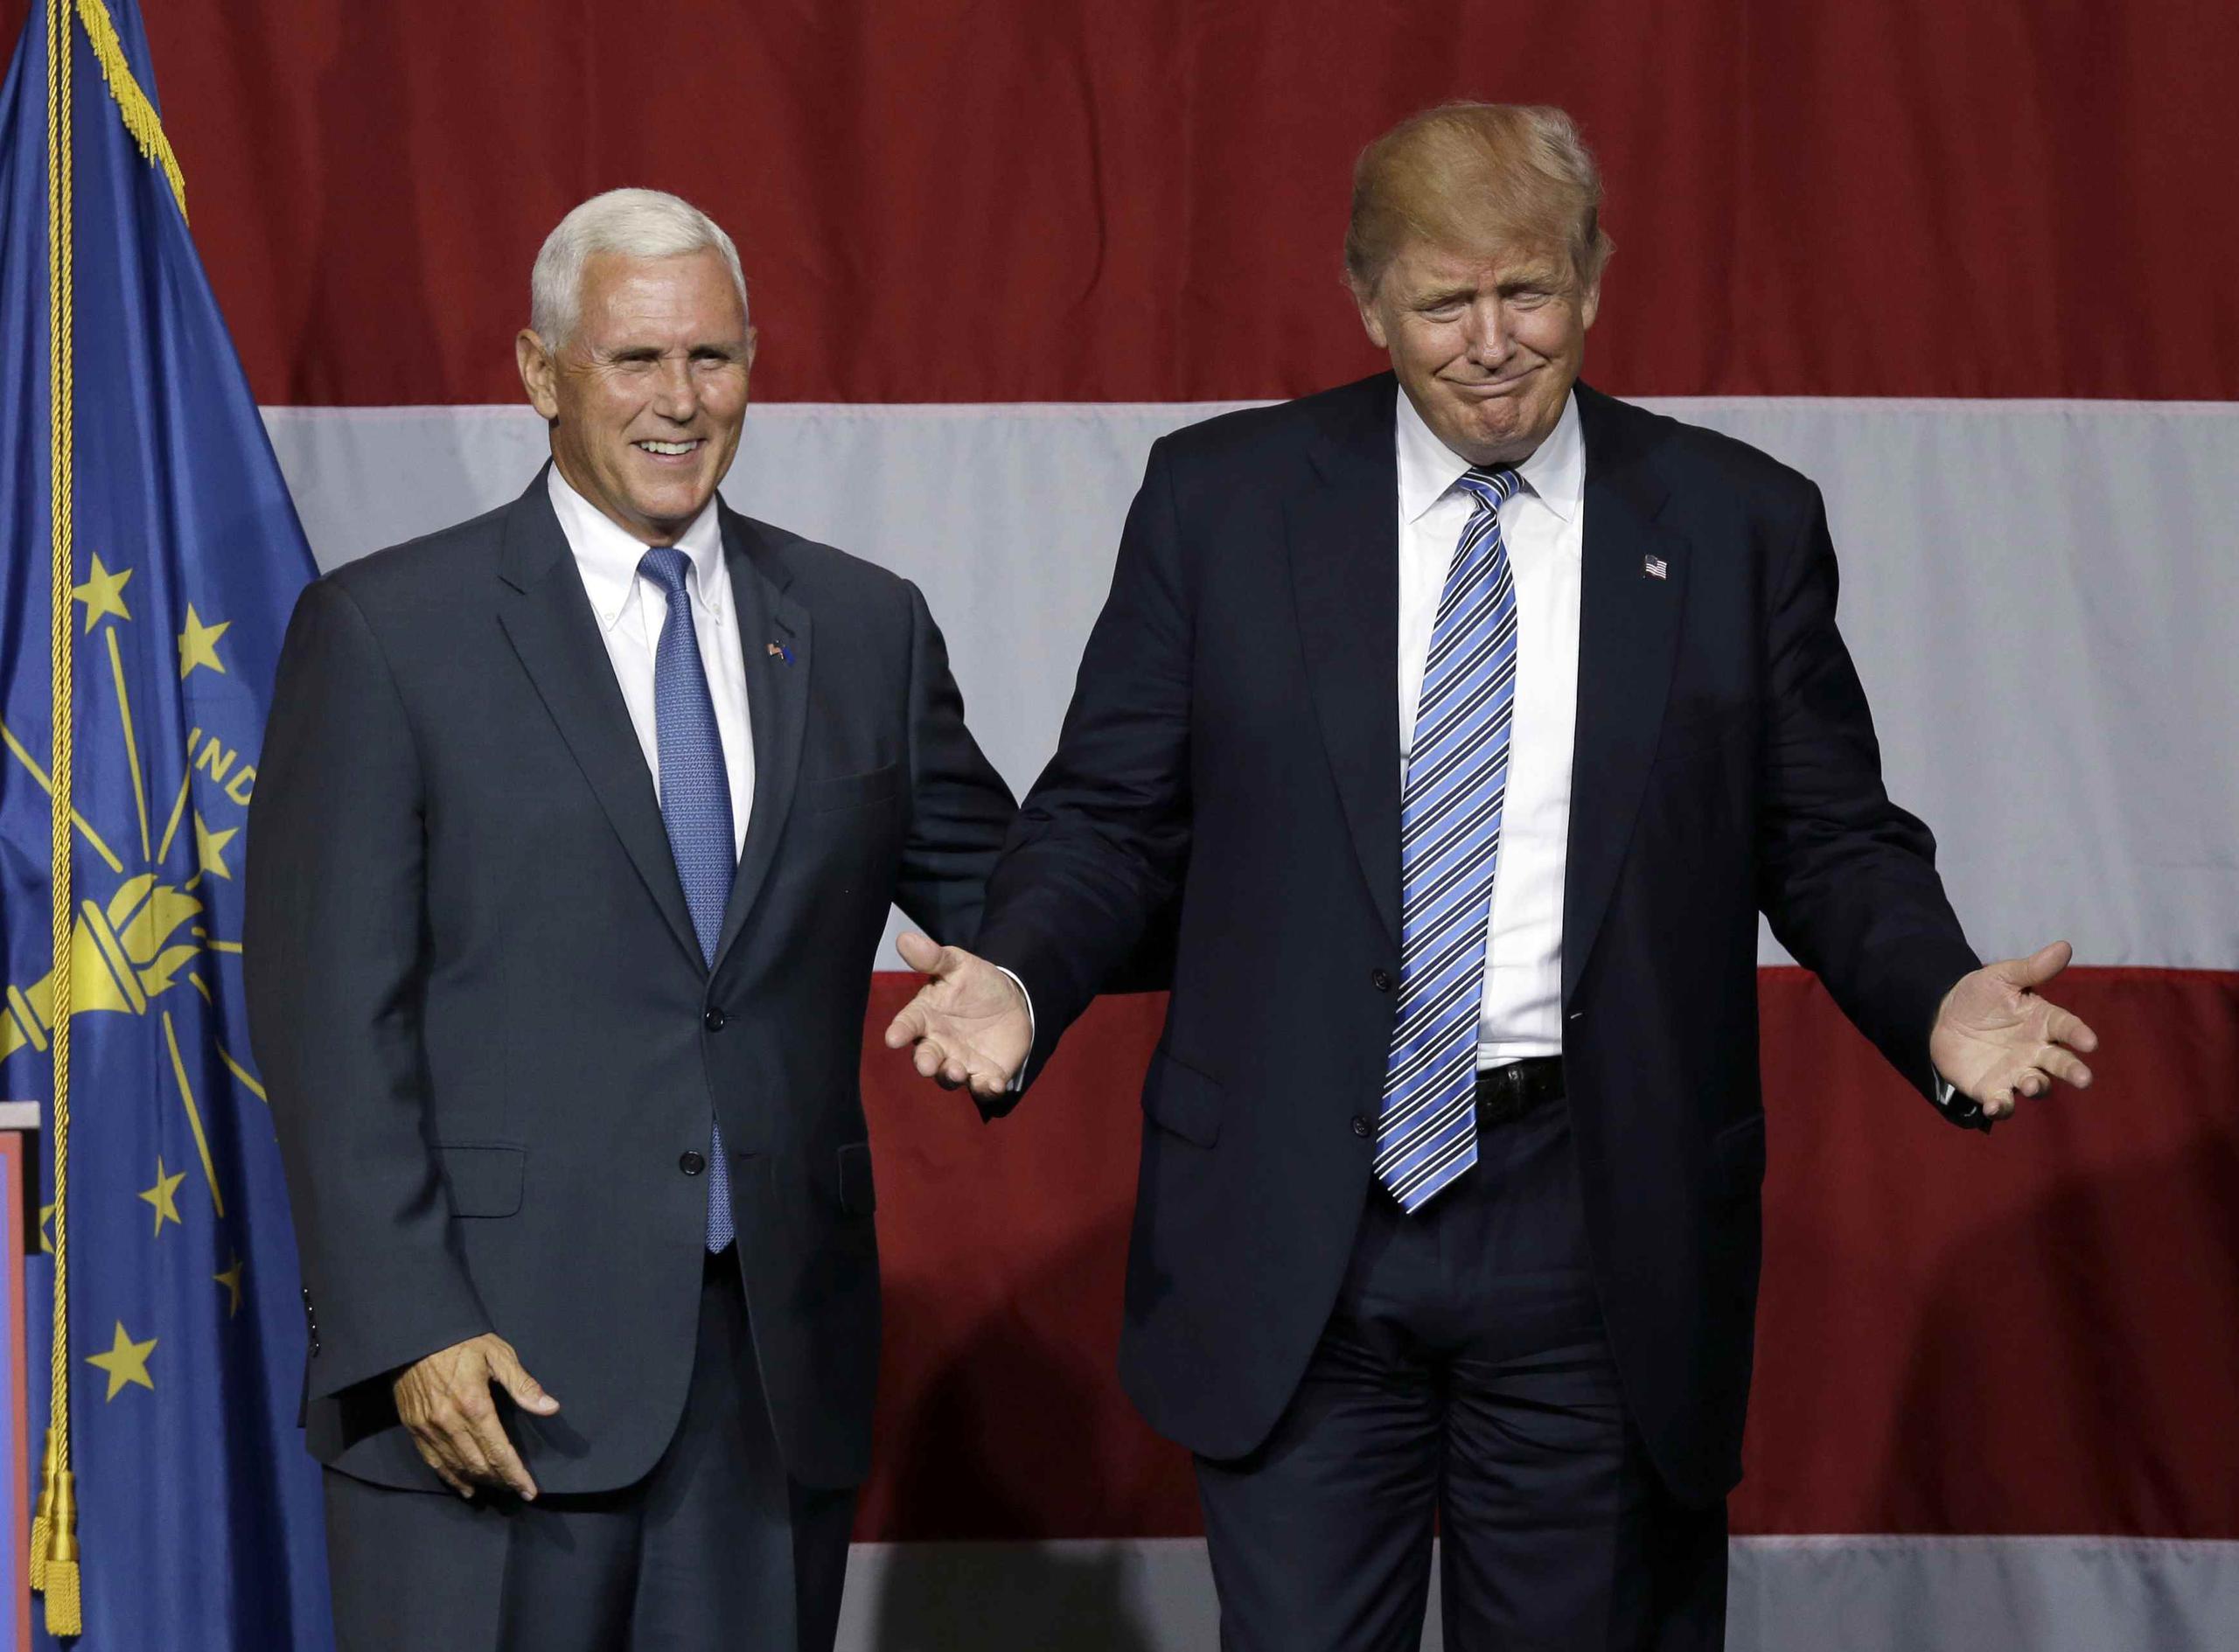 Donald Trump escogió como candidato a vicepresidente al gobernador de Indiana, Mike Pence.